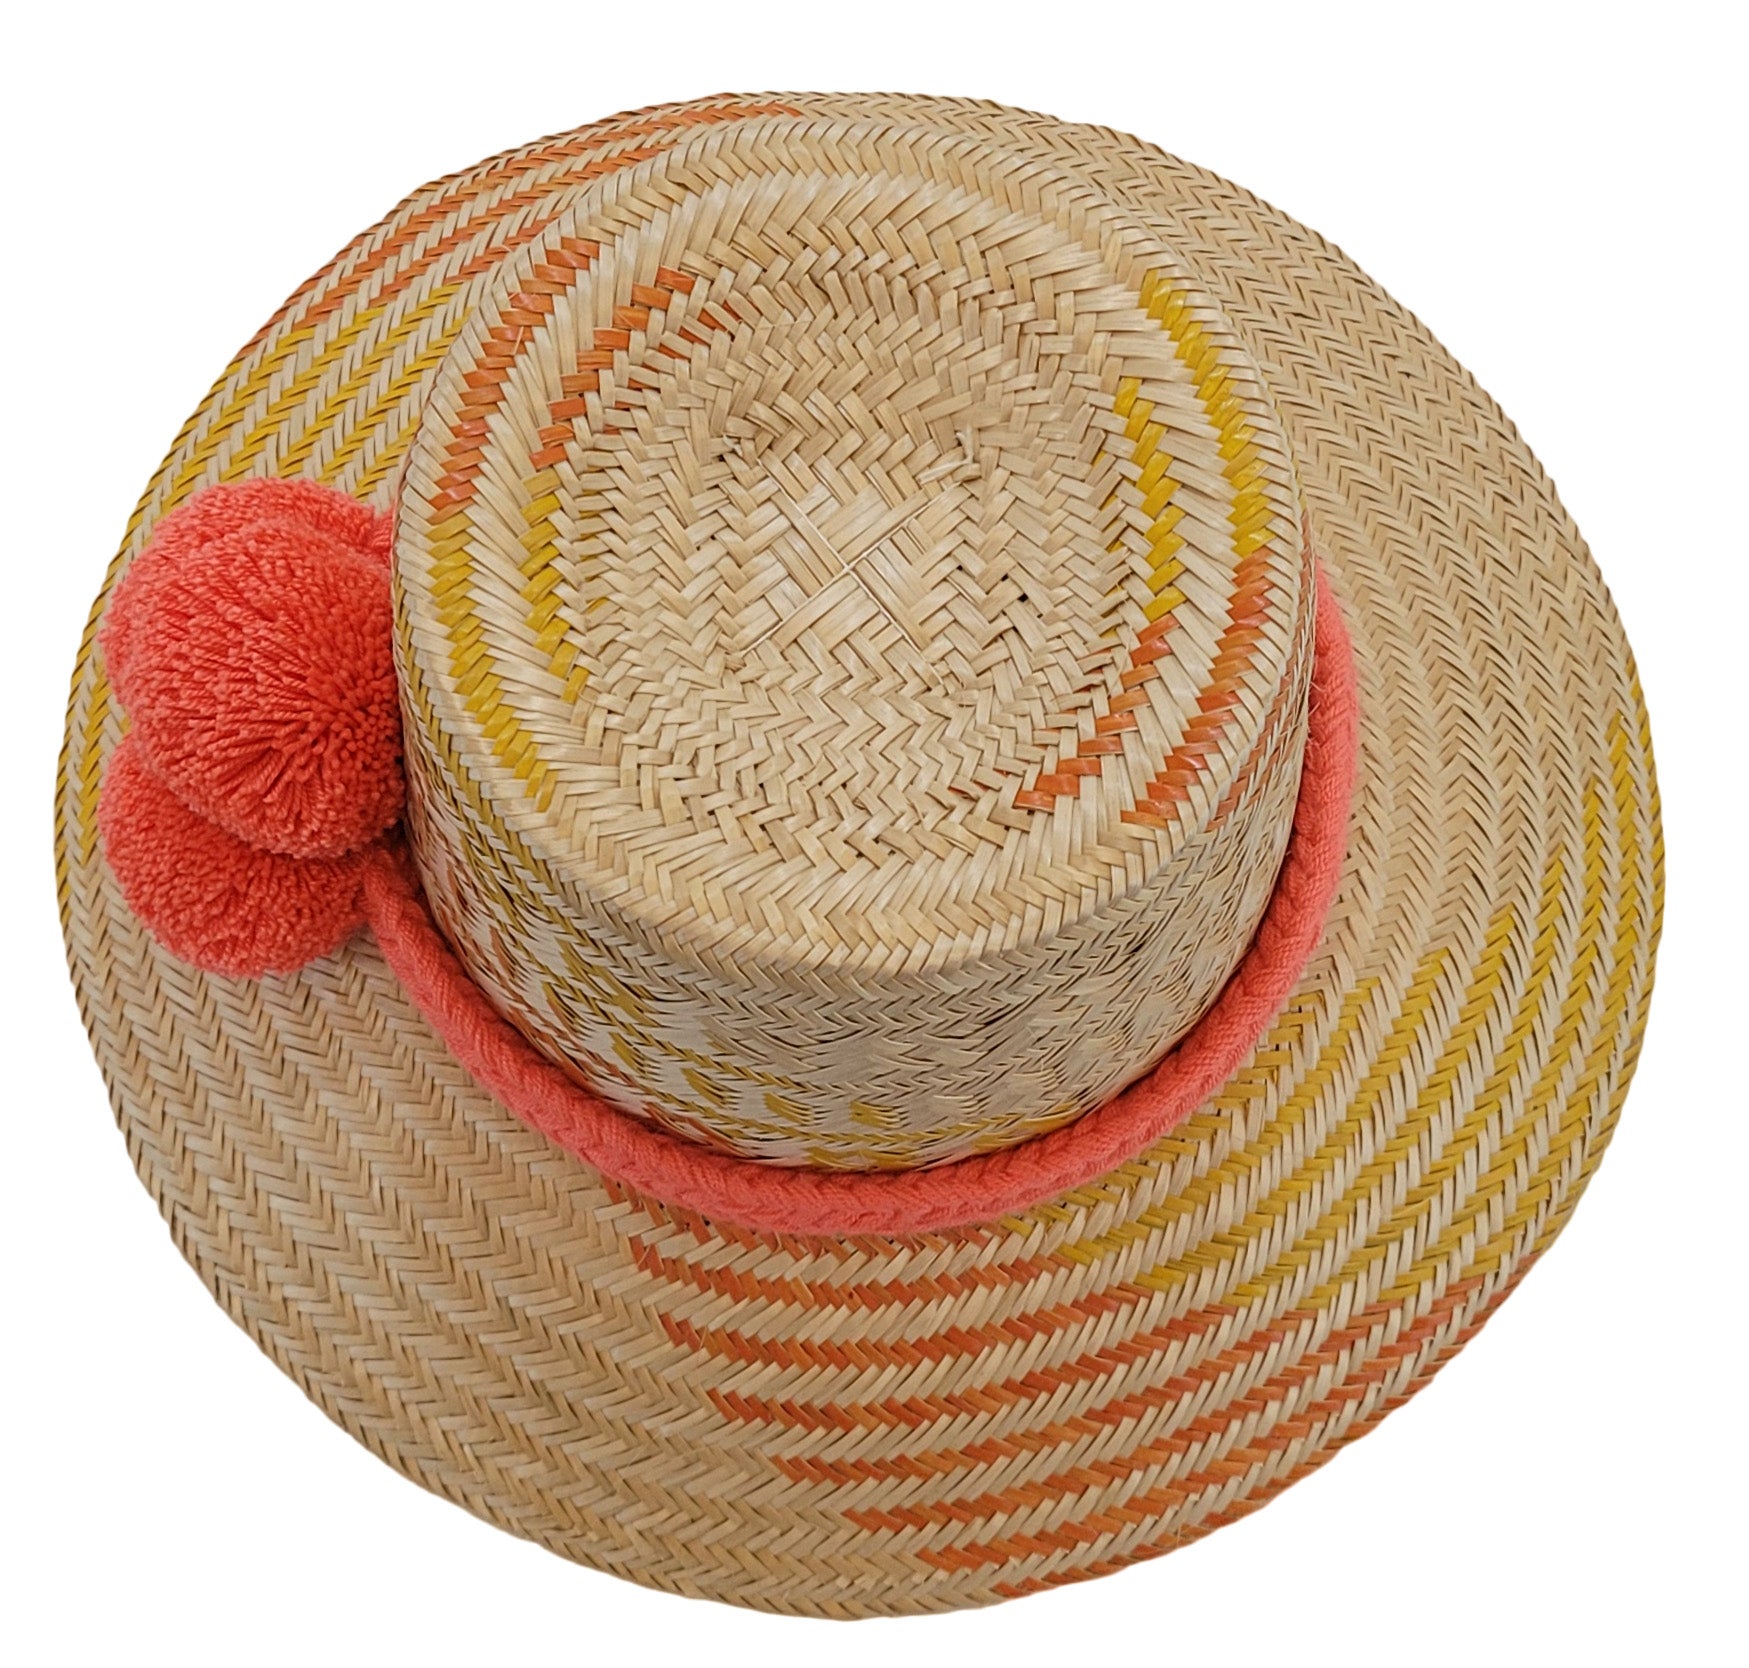 josephine handmade wayuu hat top view